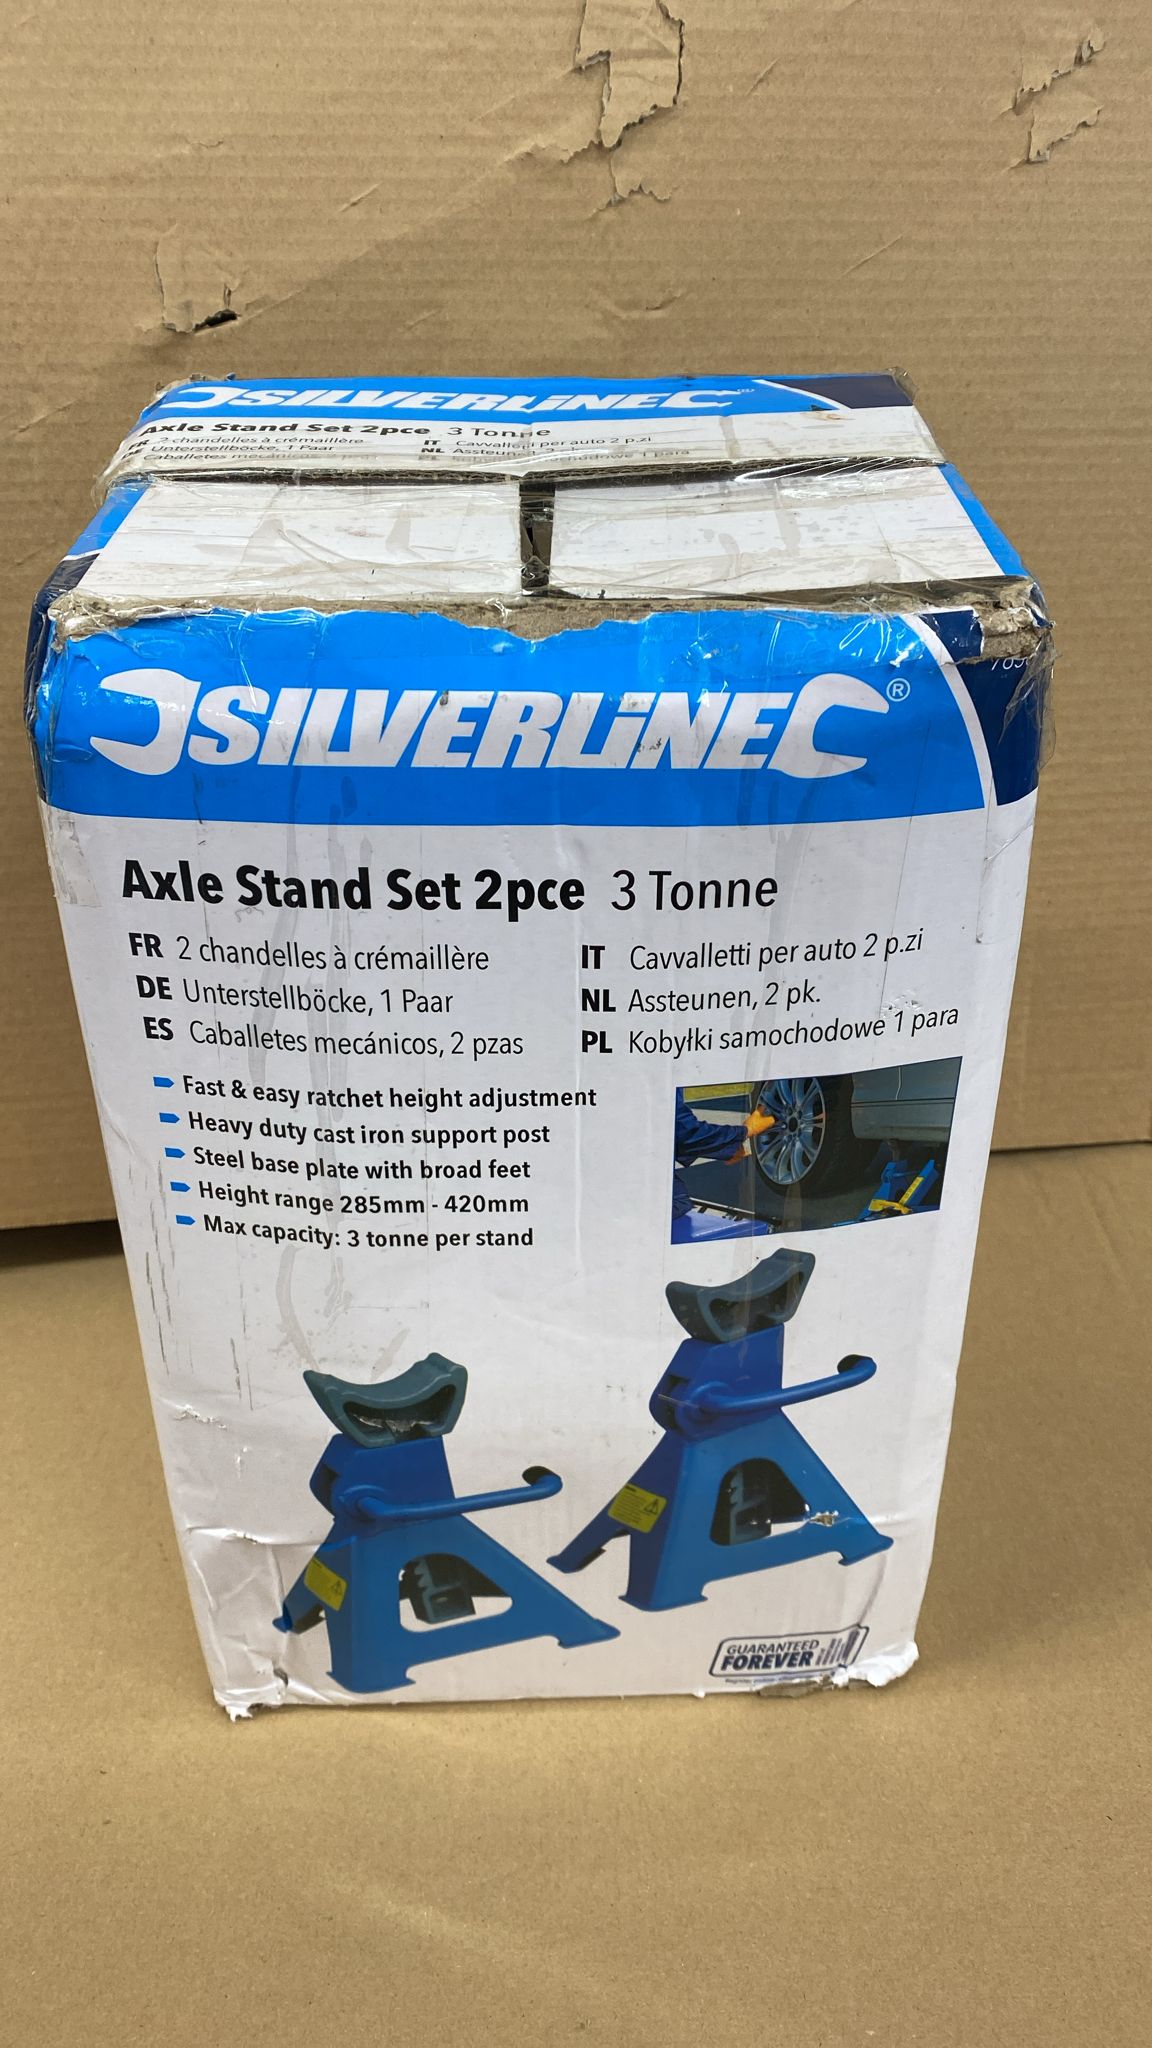 Silverline Axle Stand Set 2pce 763620 Workshop Equipment 3 Tonne-6485